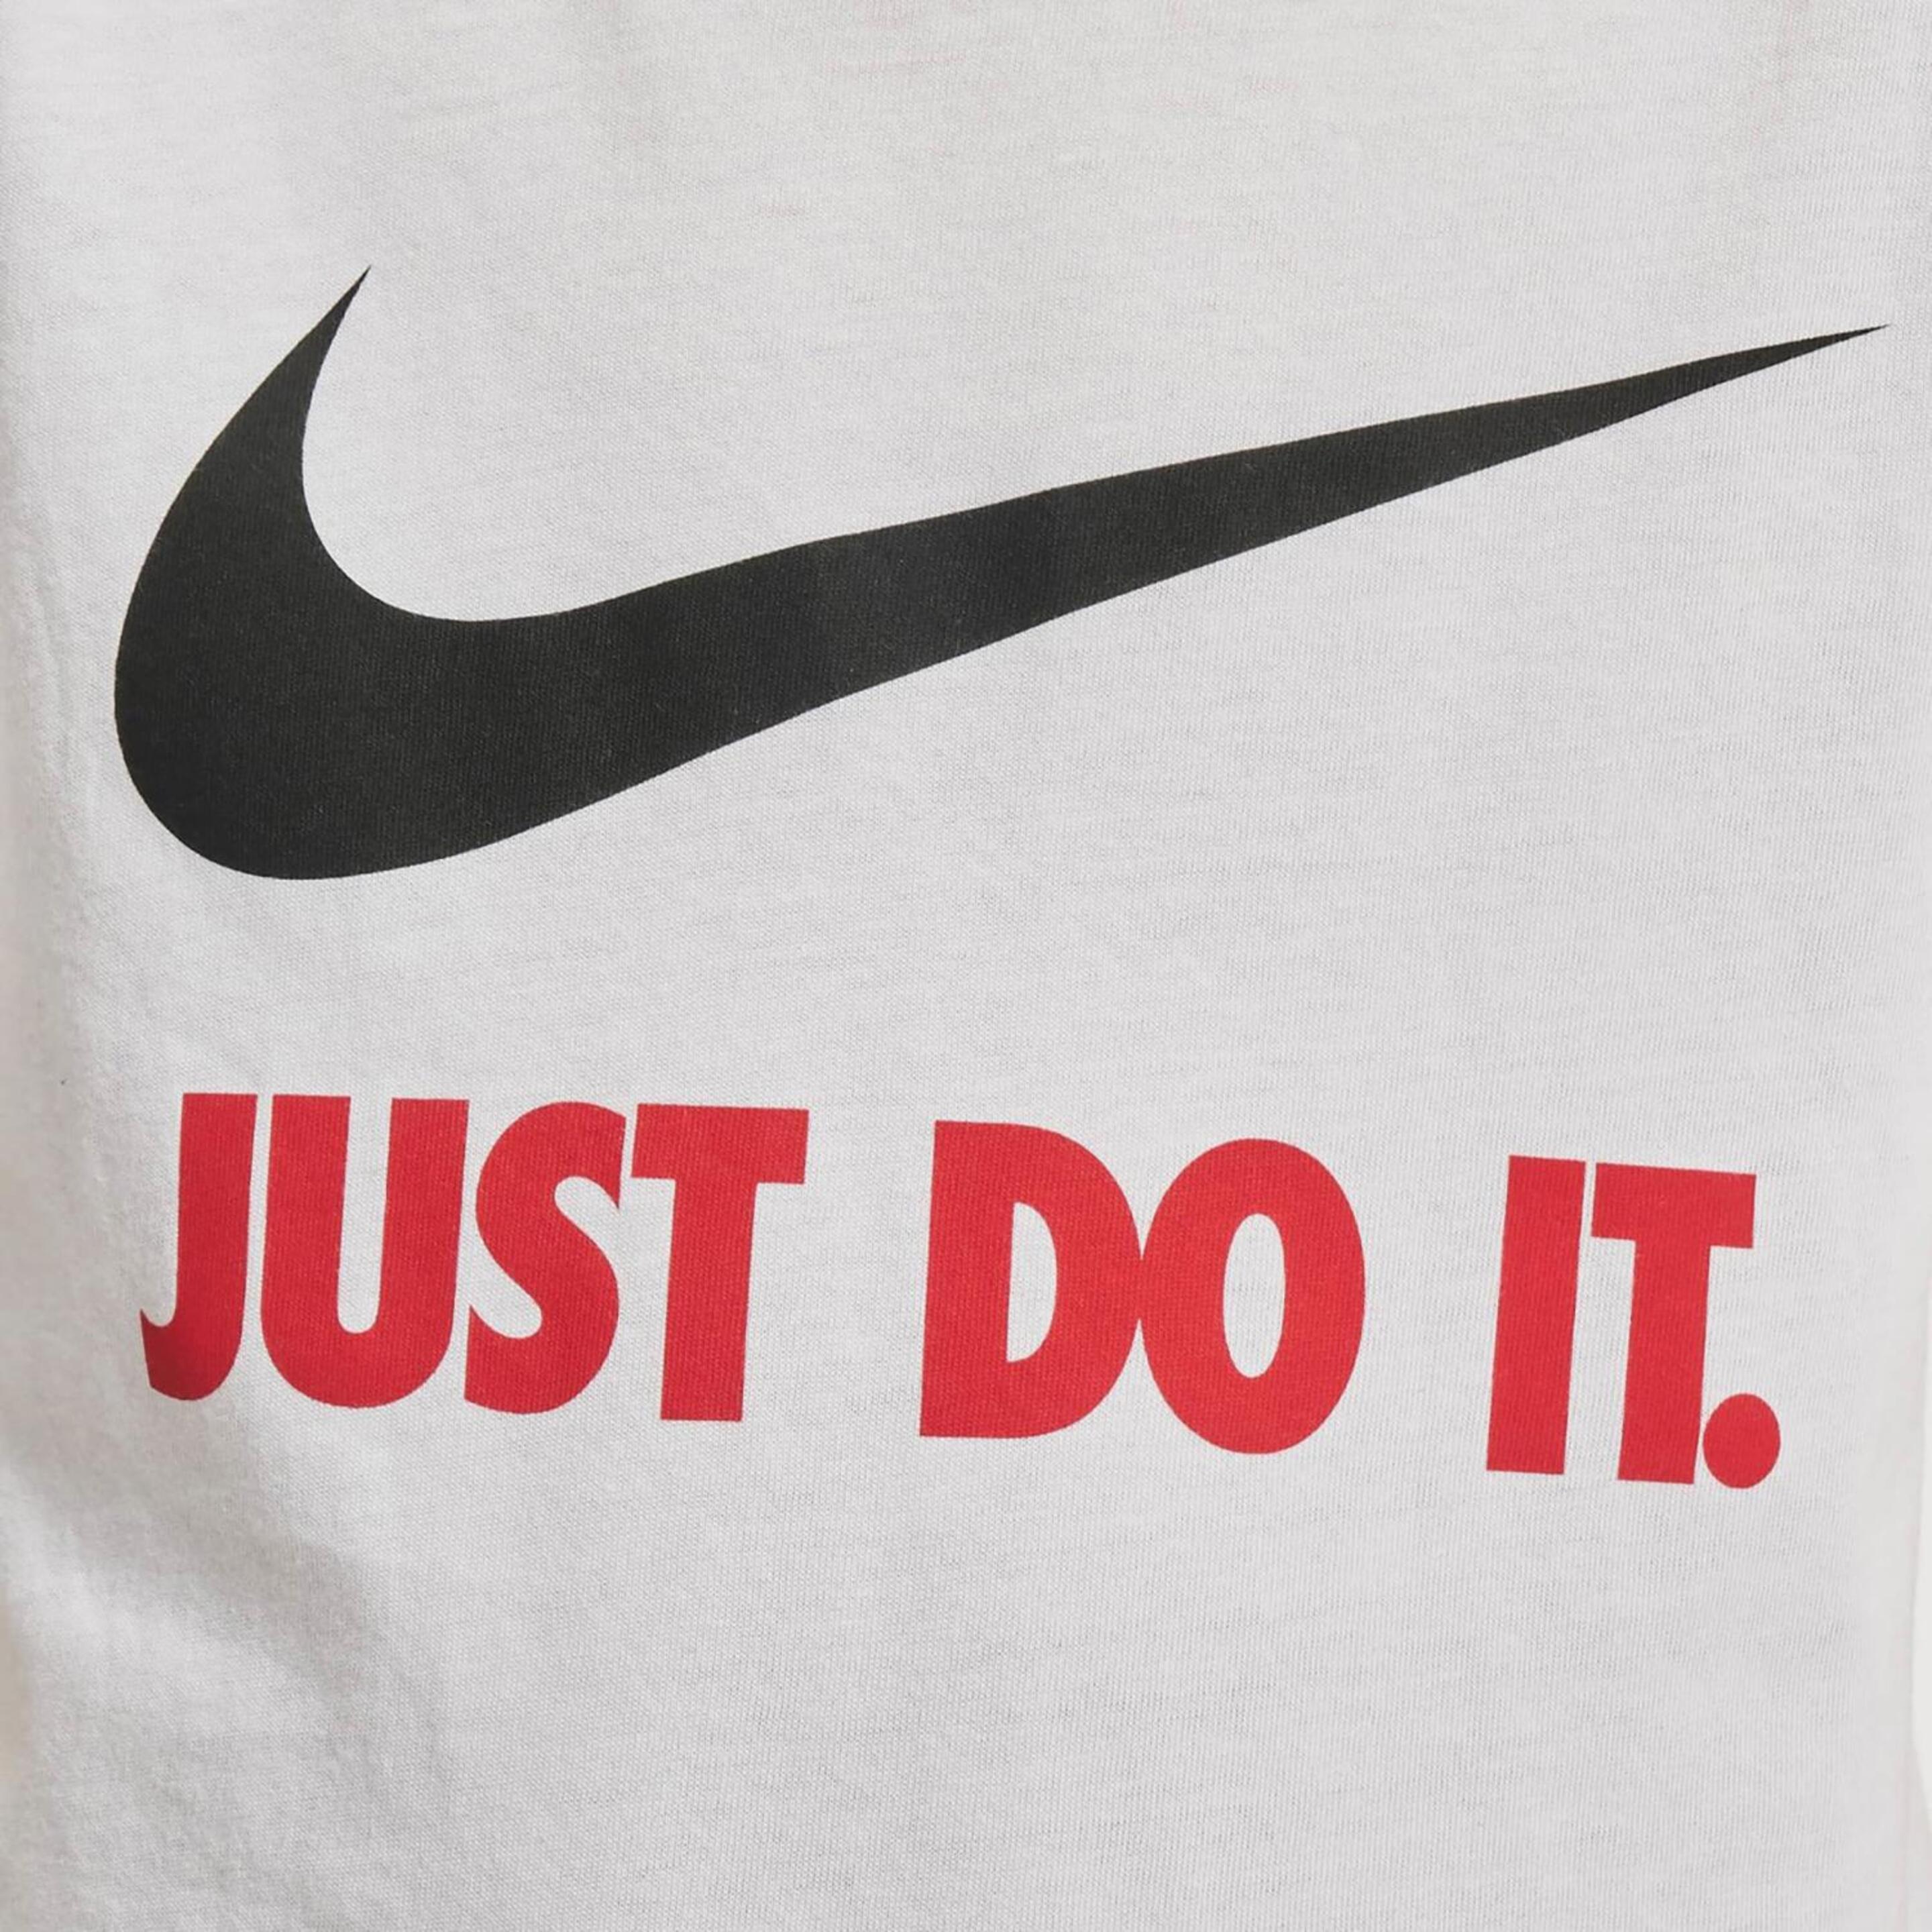 Nike Kid Camiseta Mc